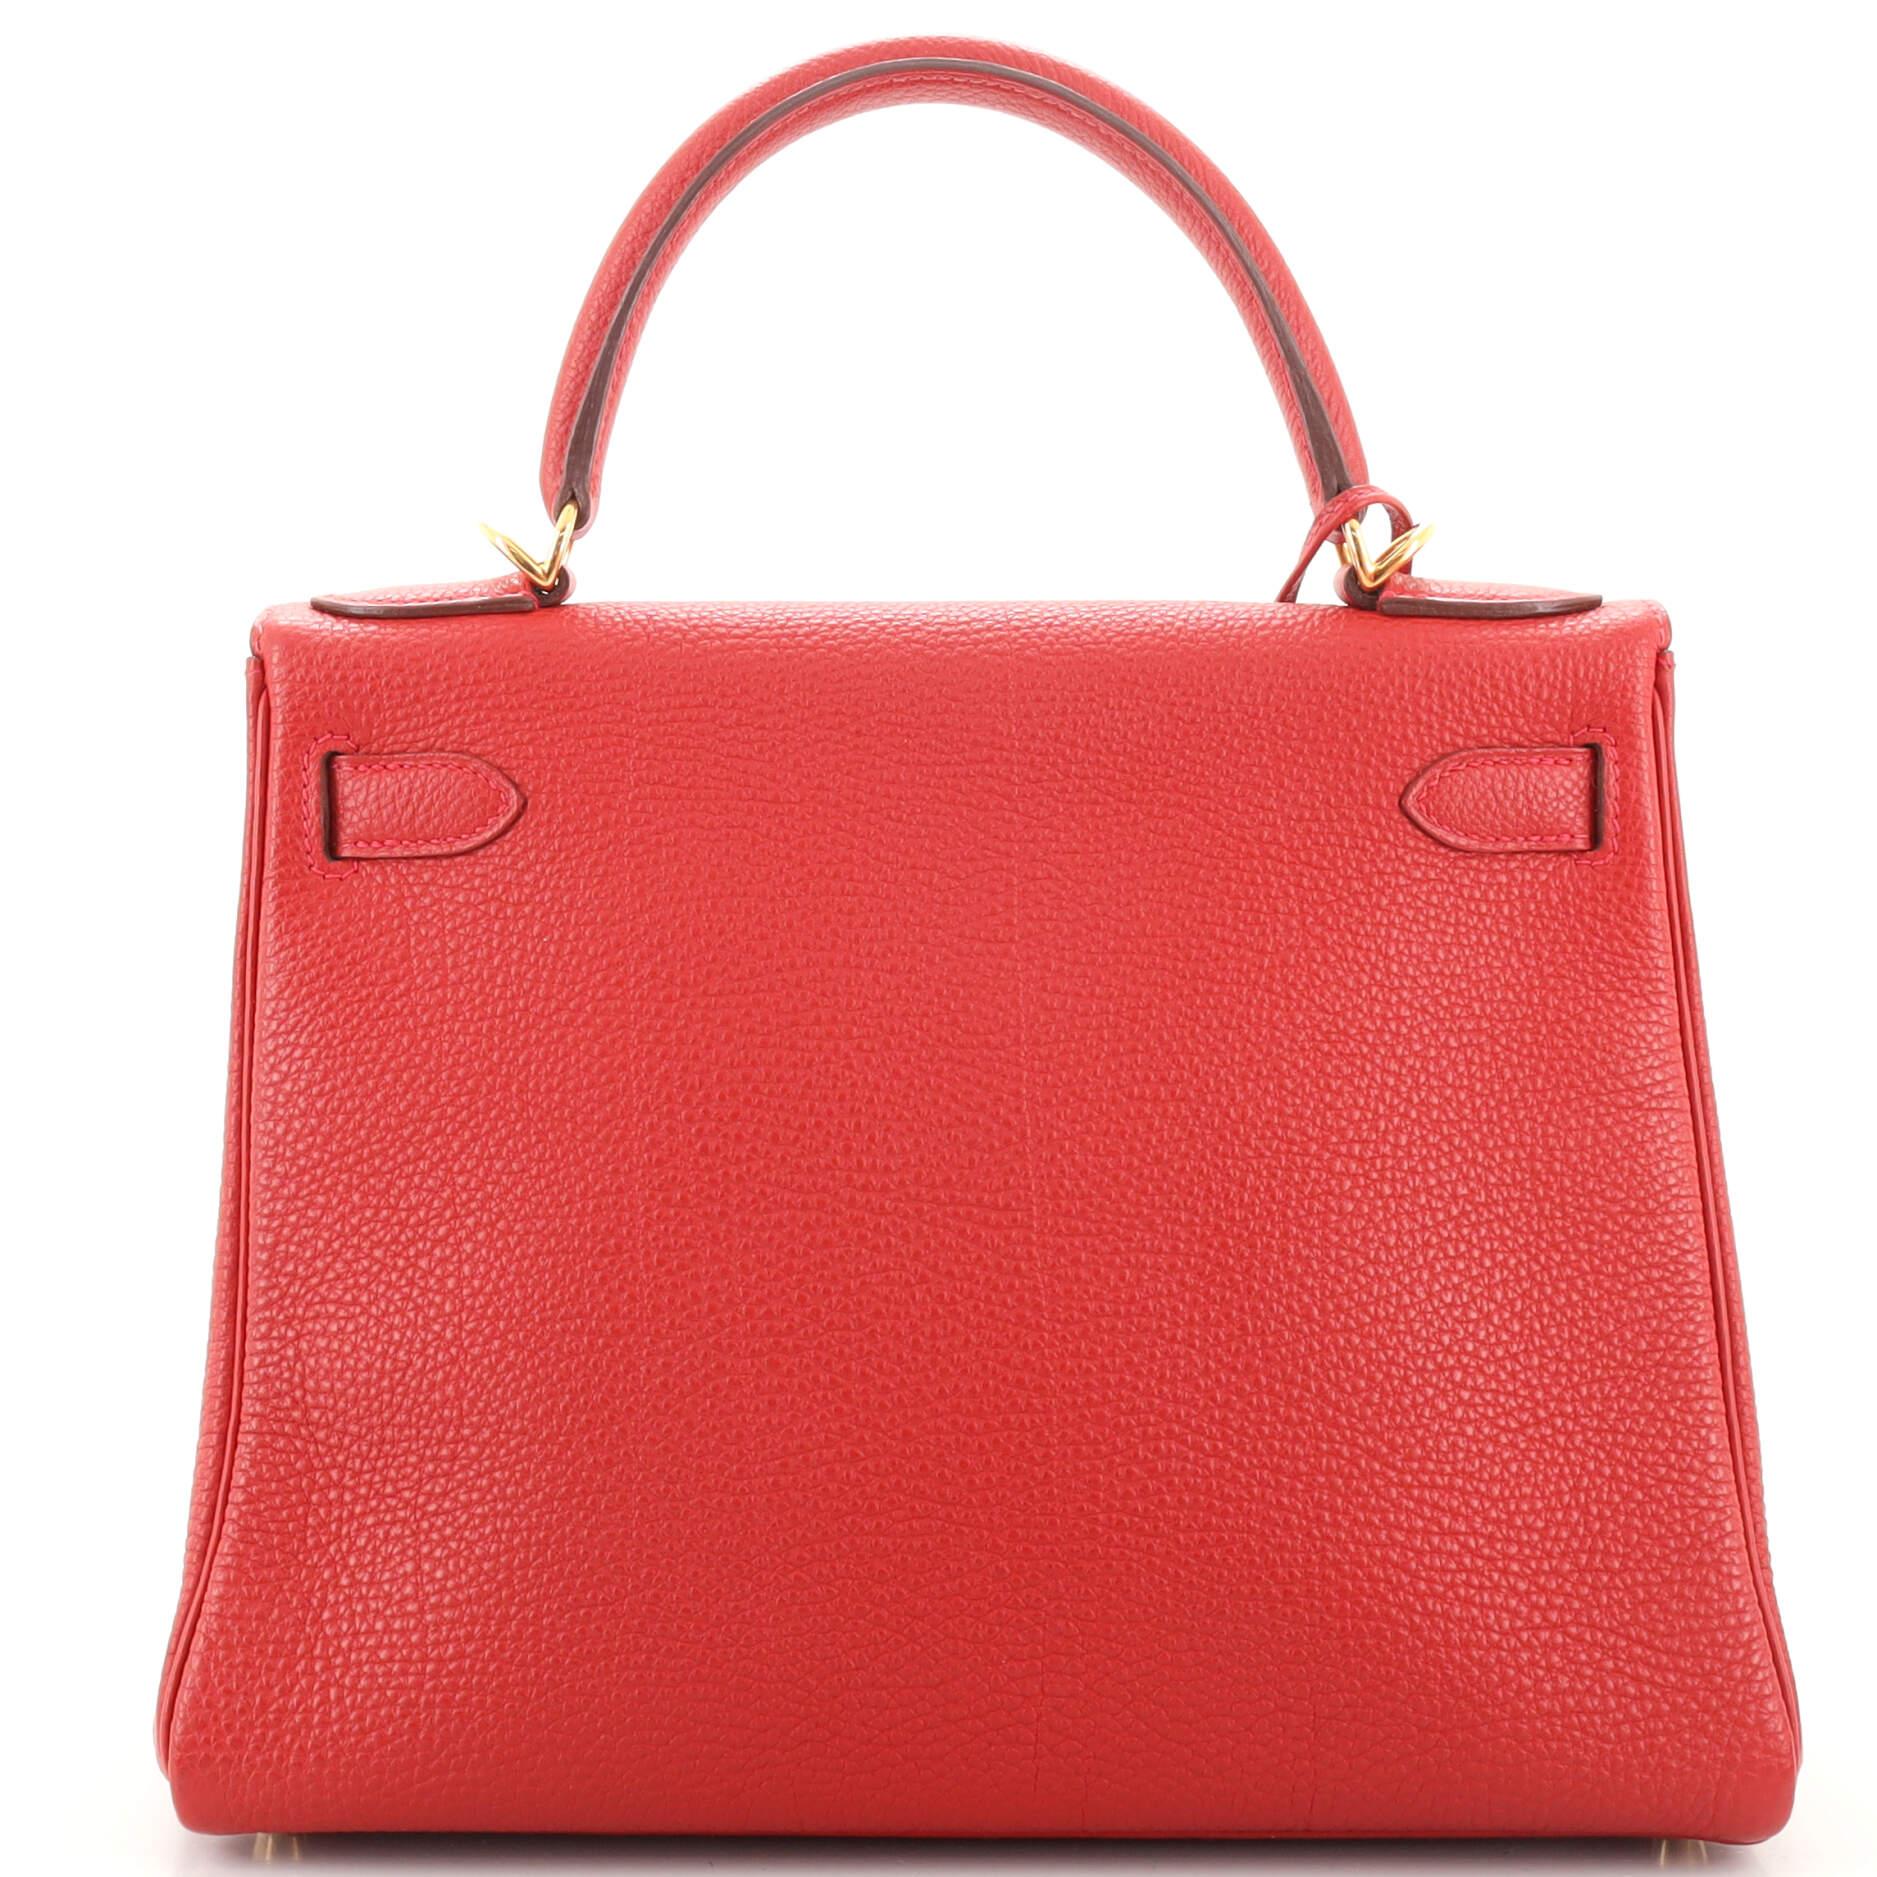 Women's or Men's Hermes Kelly Handbag Rouge Vif Togo with Gold Hardware 28